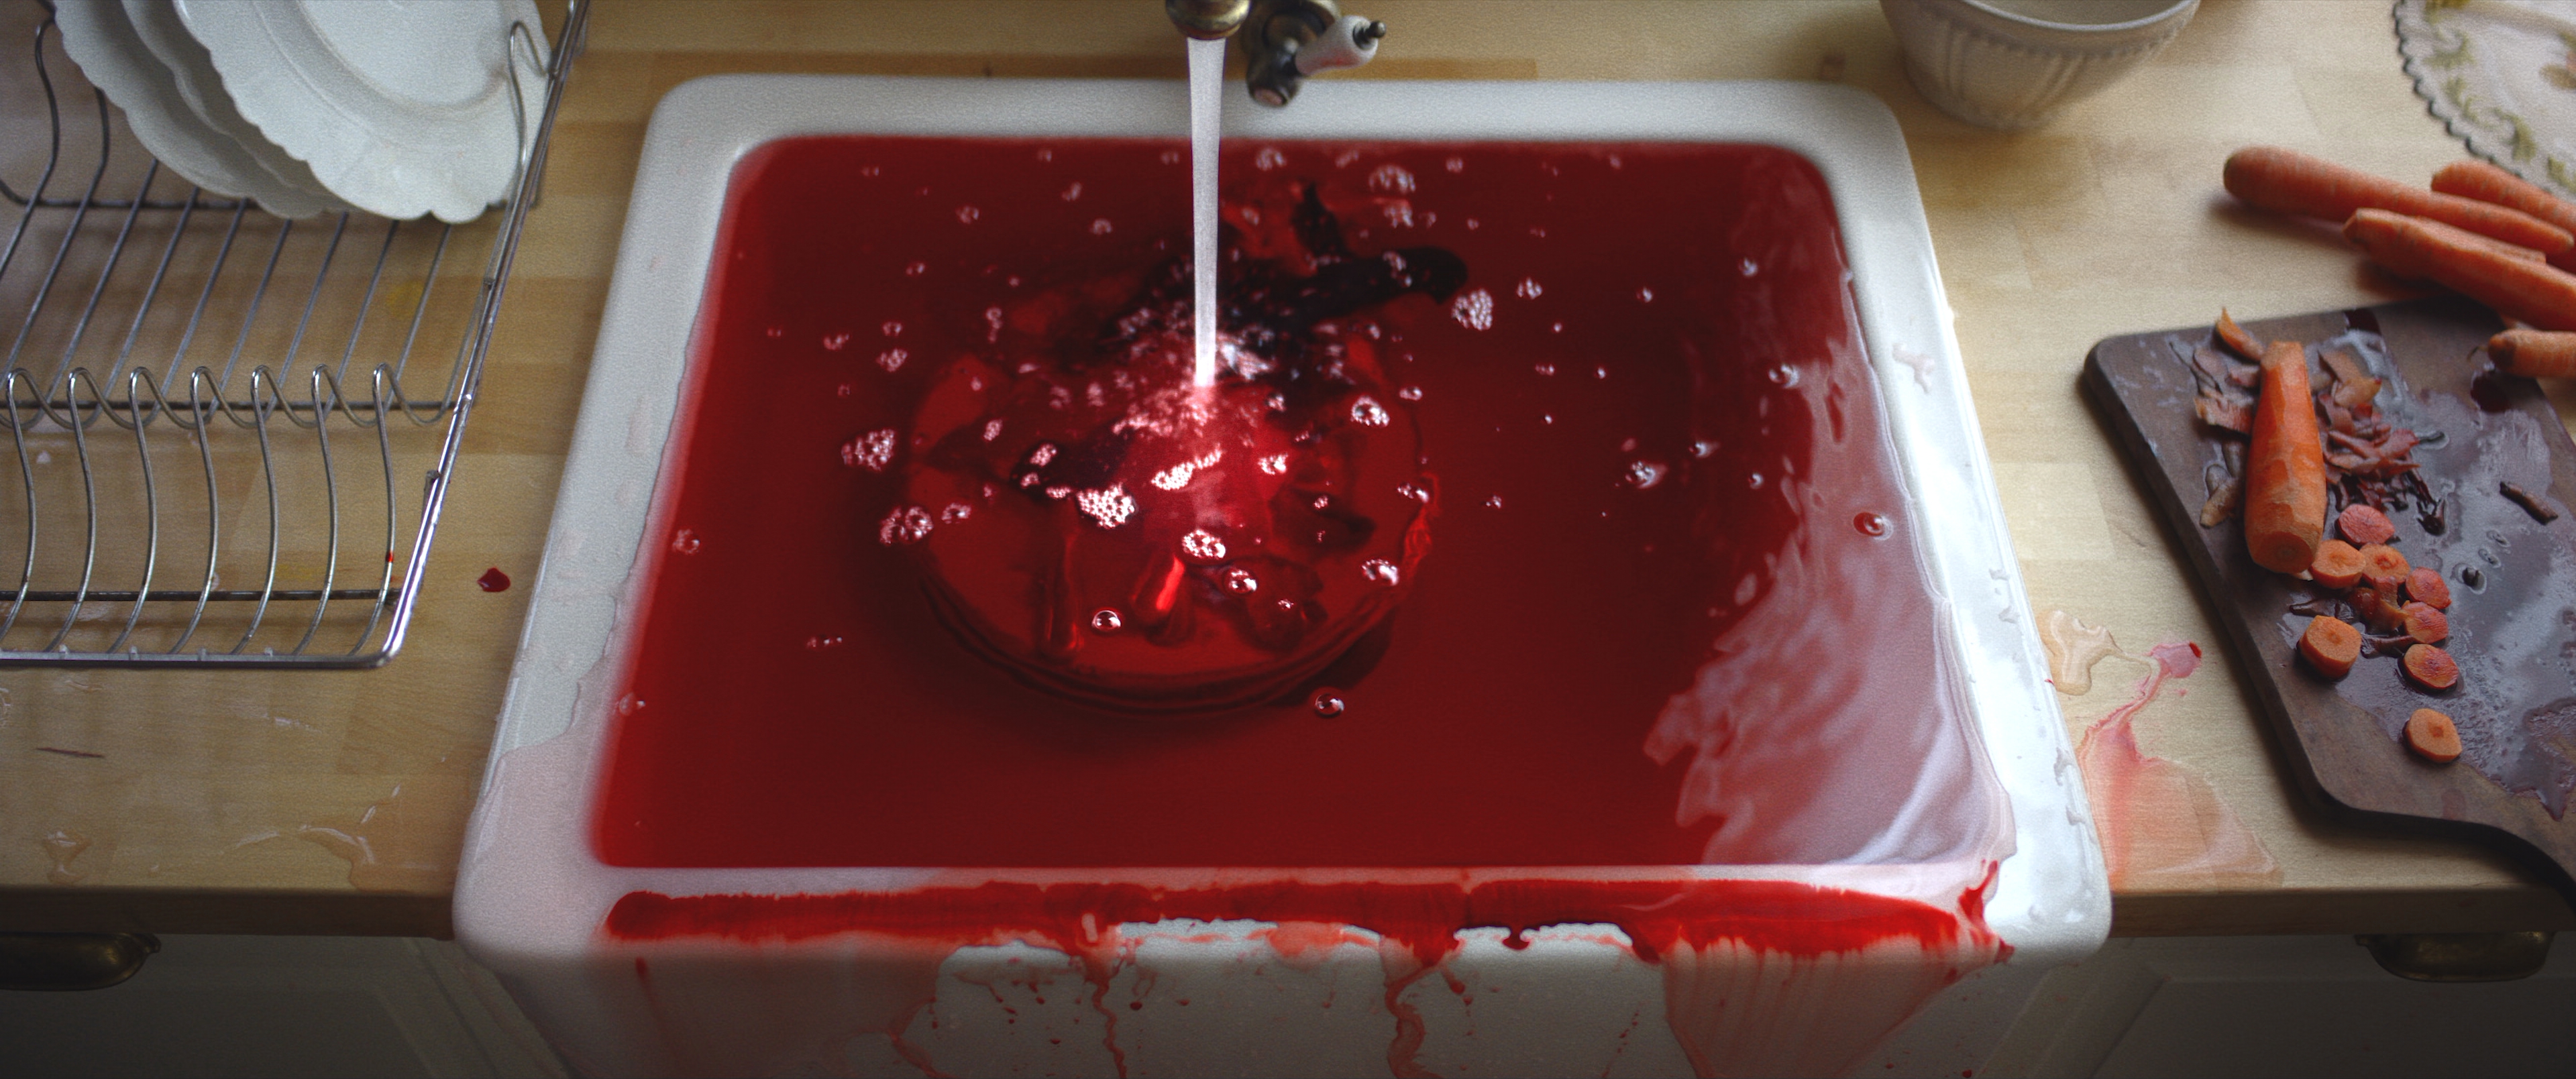 Раковина в крови, Кровавая вода, Трагедия на кухне